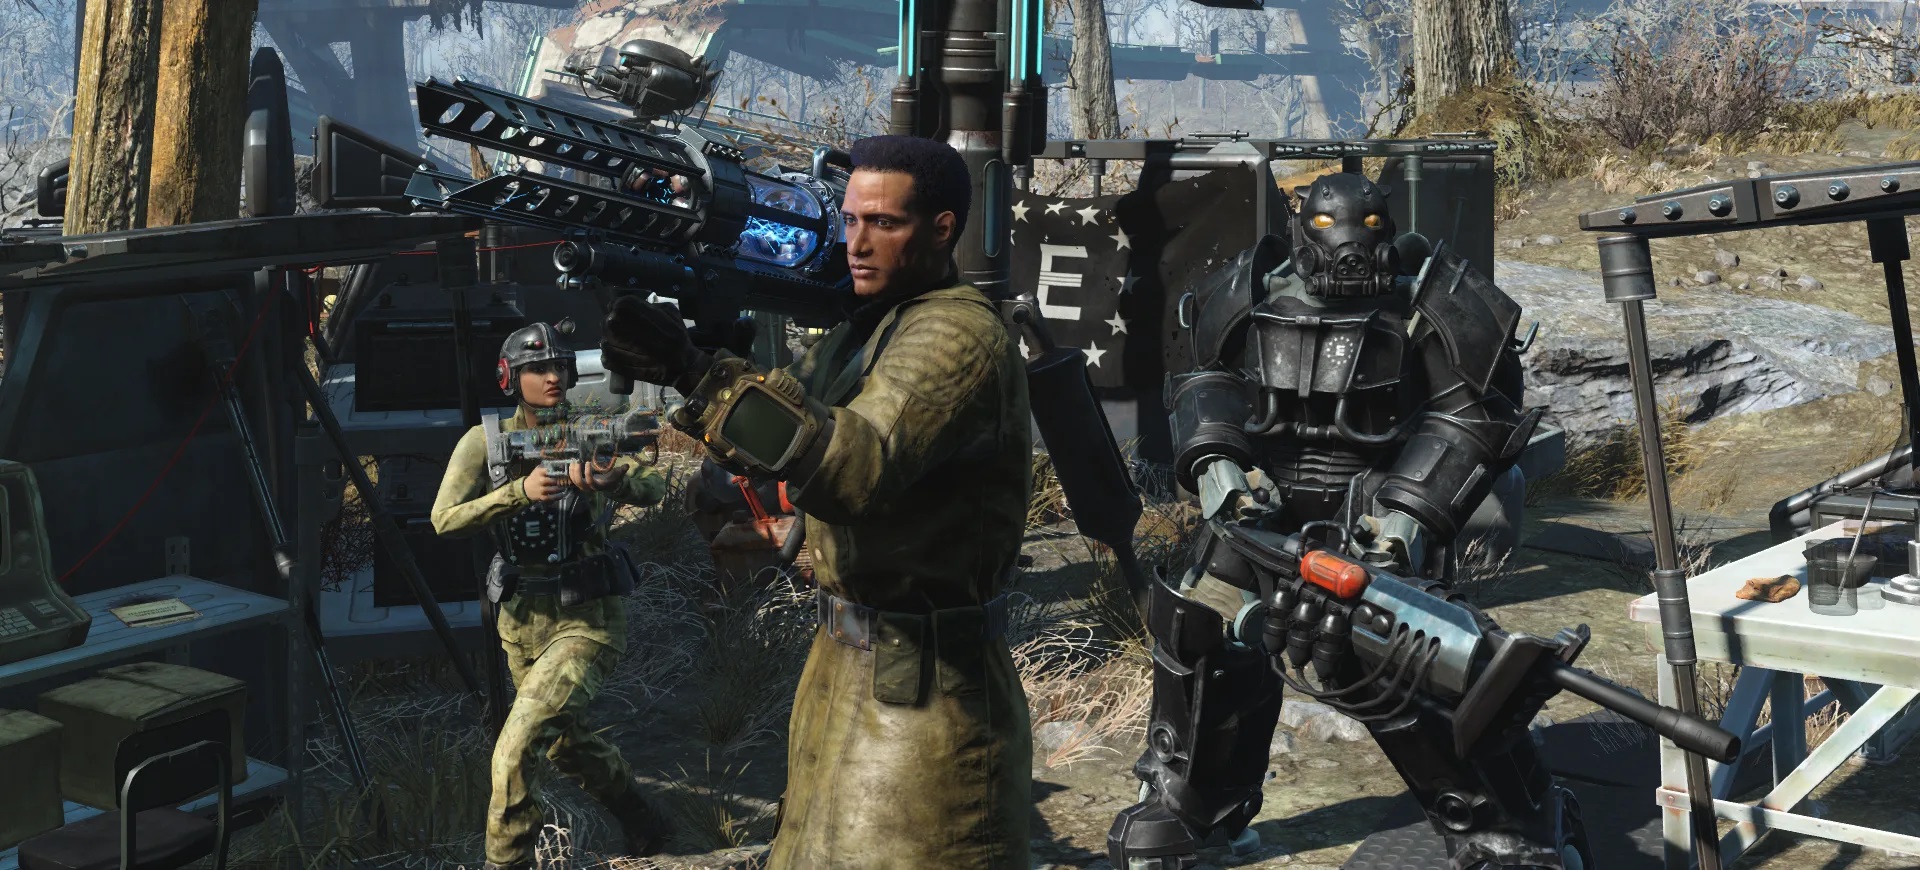 Fallout 4 dostaje next-genową aktualizację. Oto zmiany